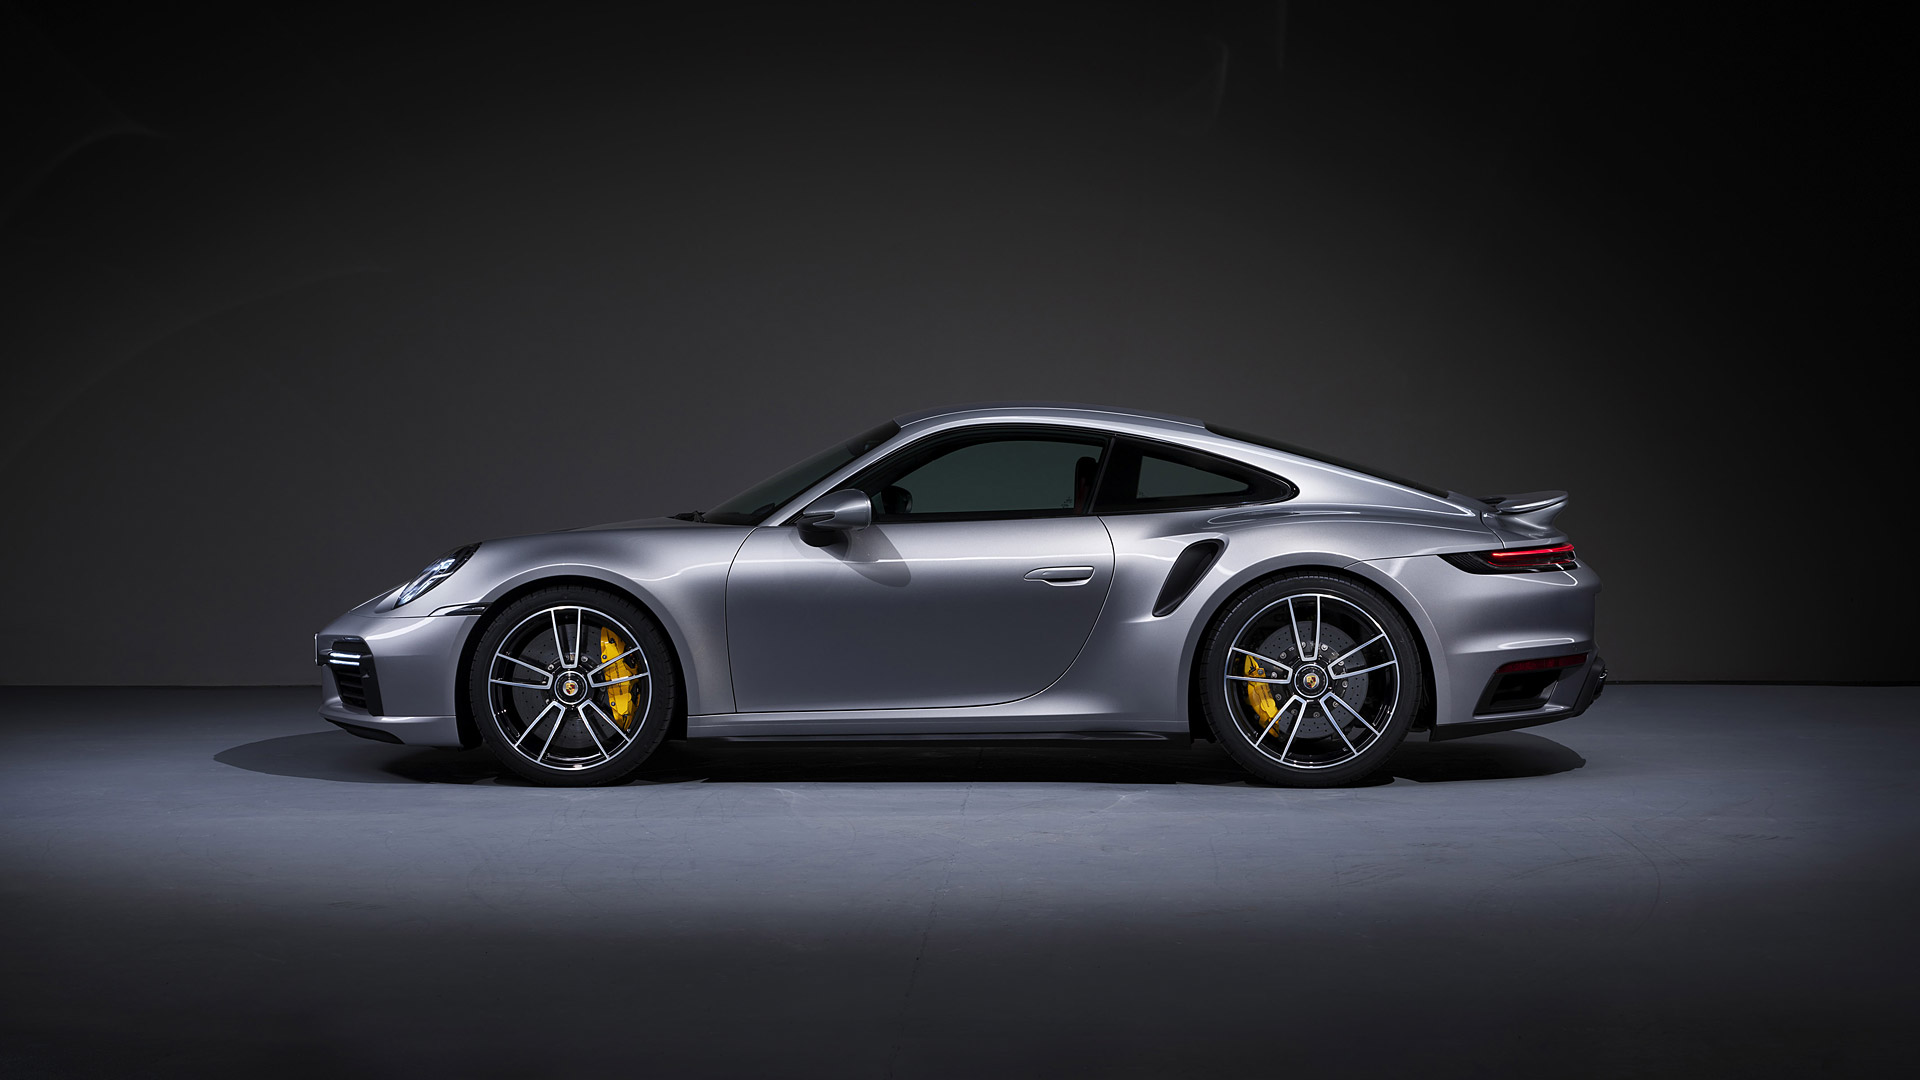 Free download 2020 Porsche 911 Turbo S Wallpapers Specs ...